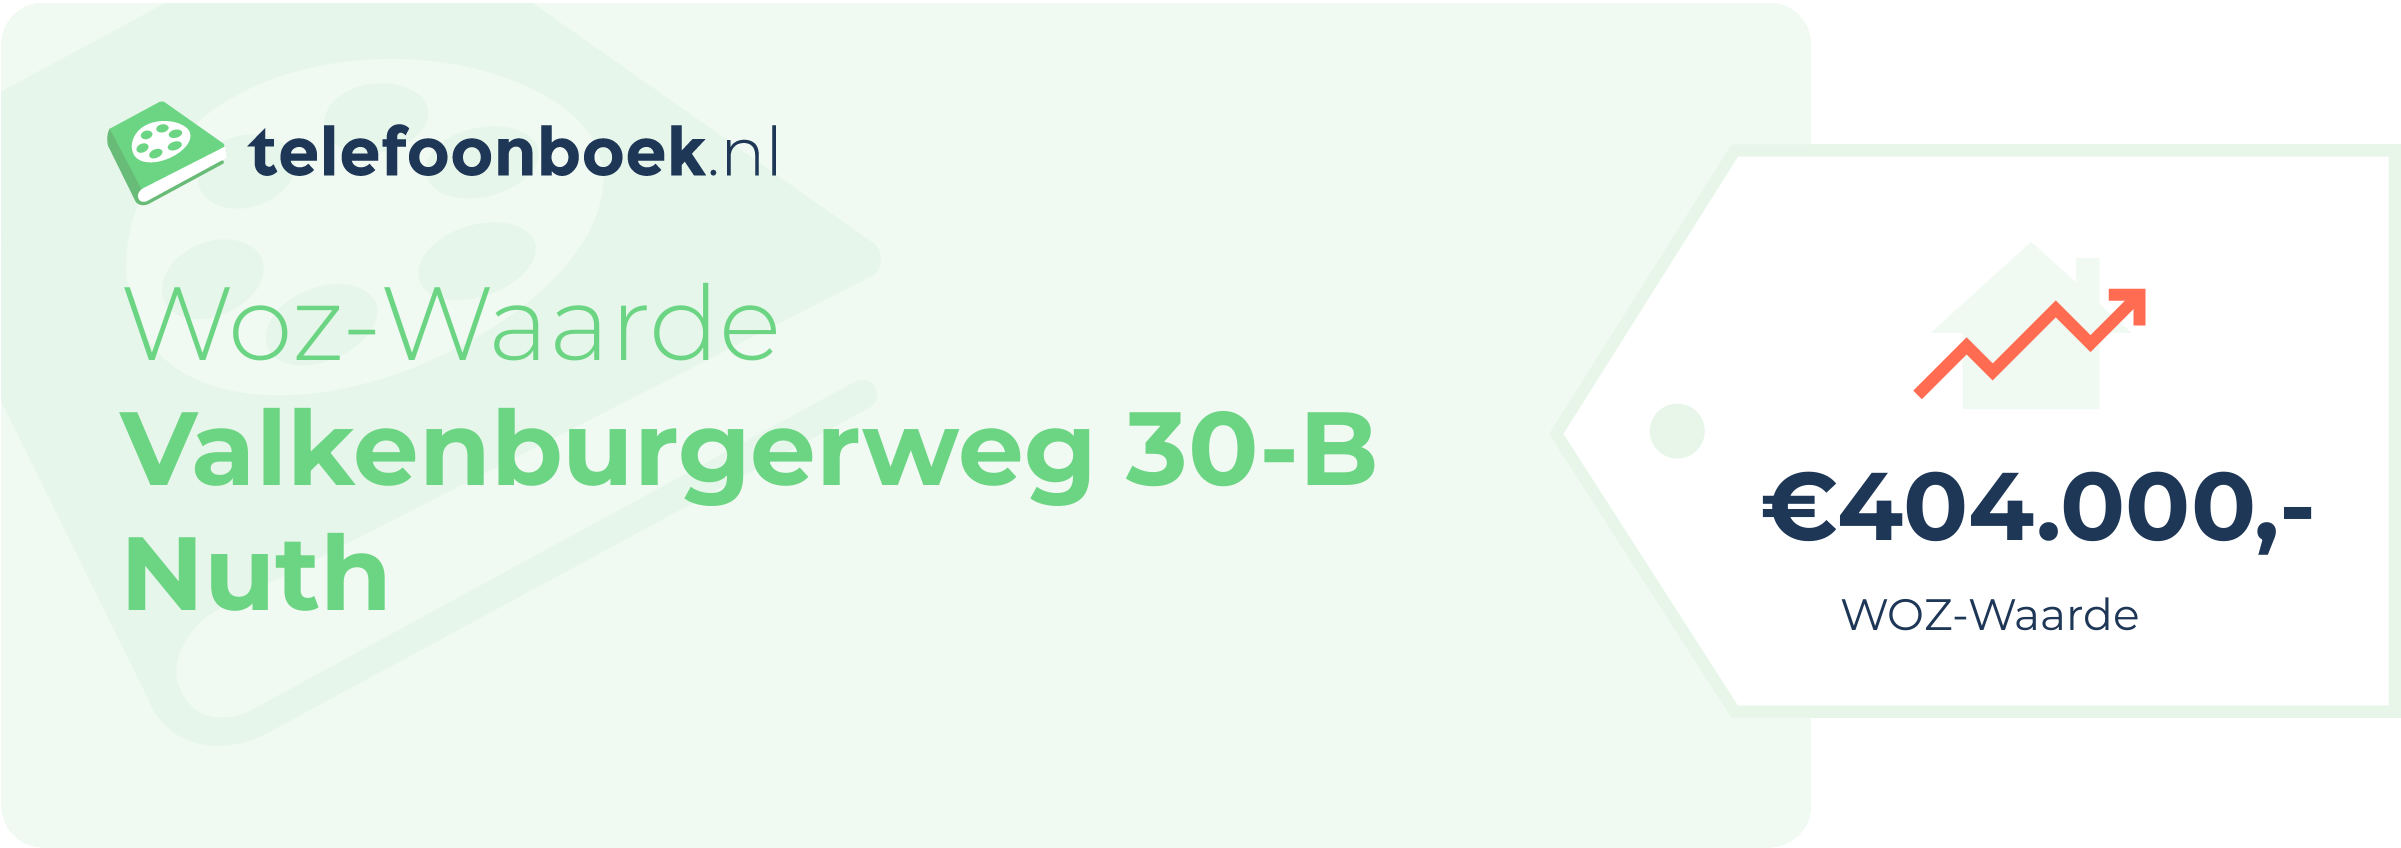 WOZ-waarde Valkenburgerweg 30-B Nuth